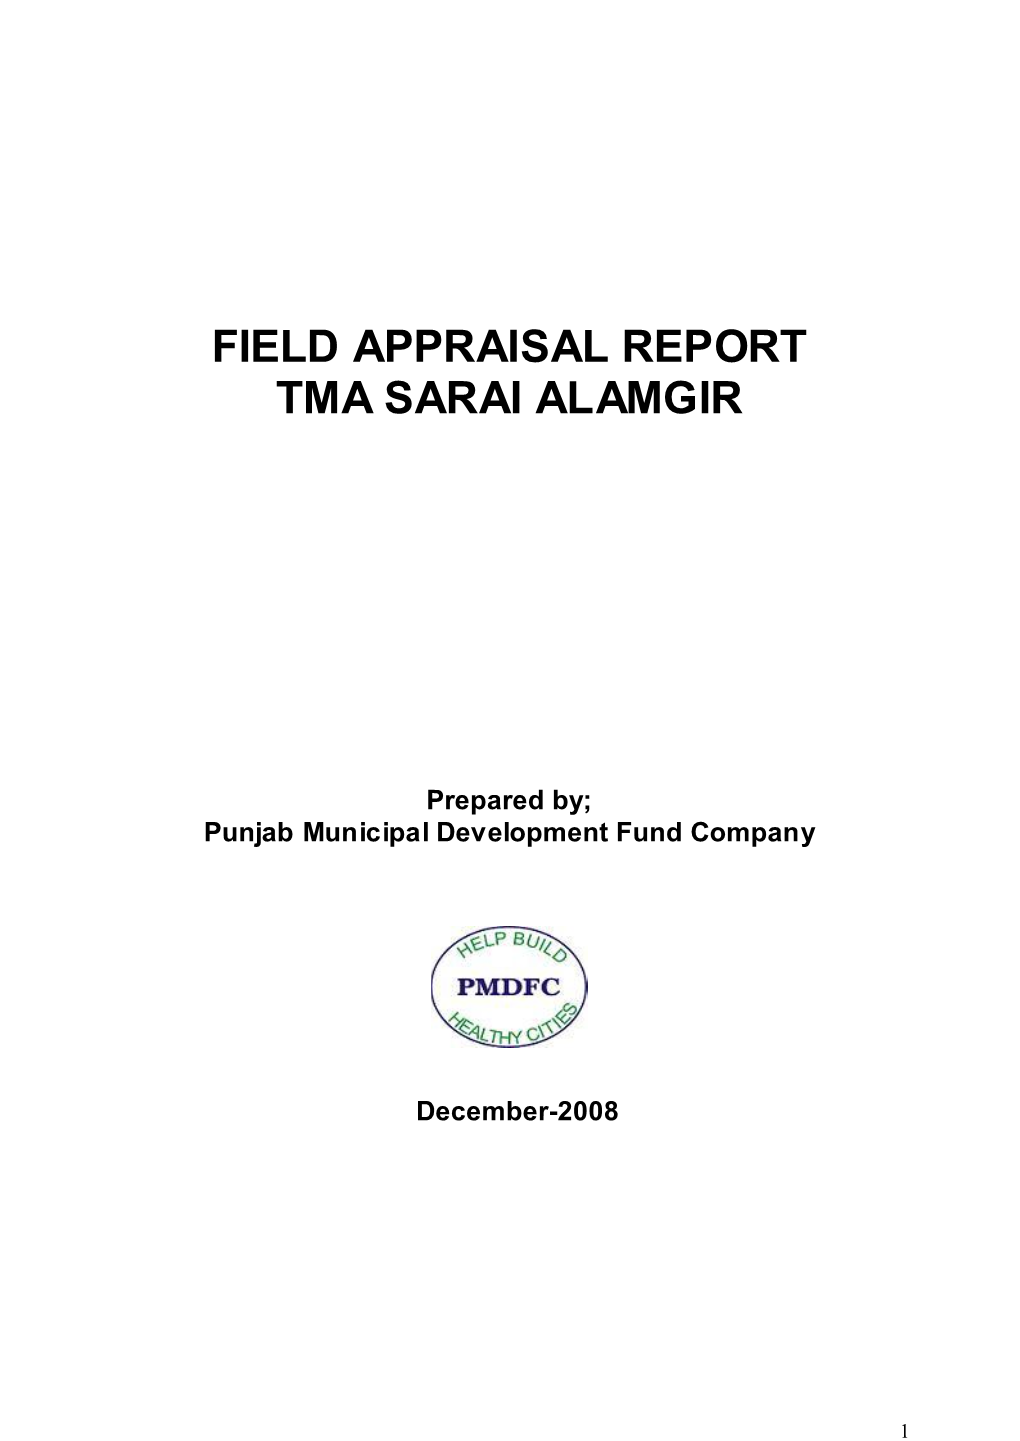 Field Appraisal Report Tma Sarai Alamgir